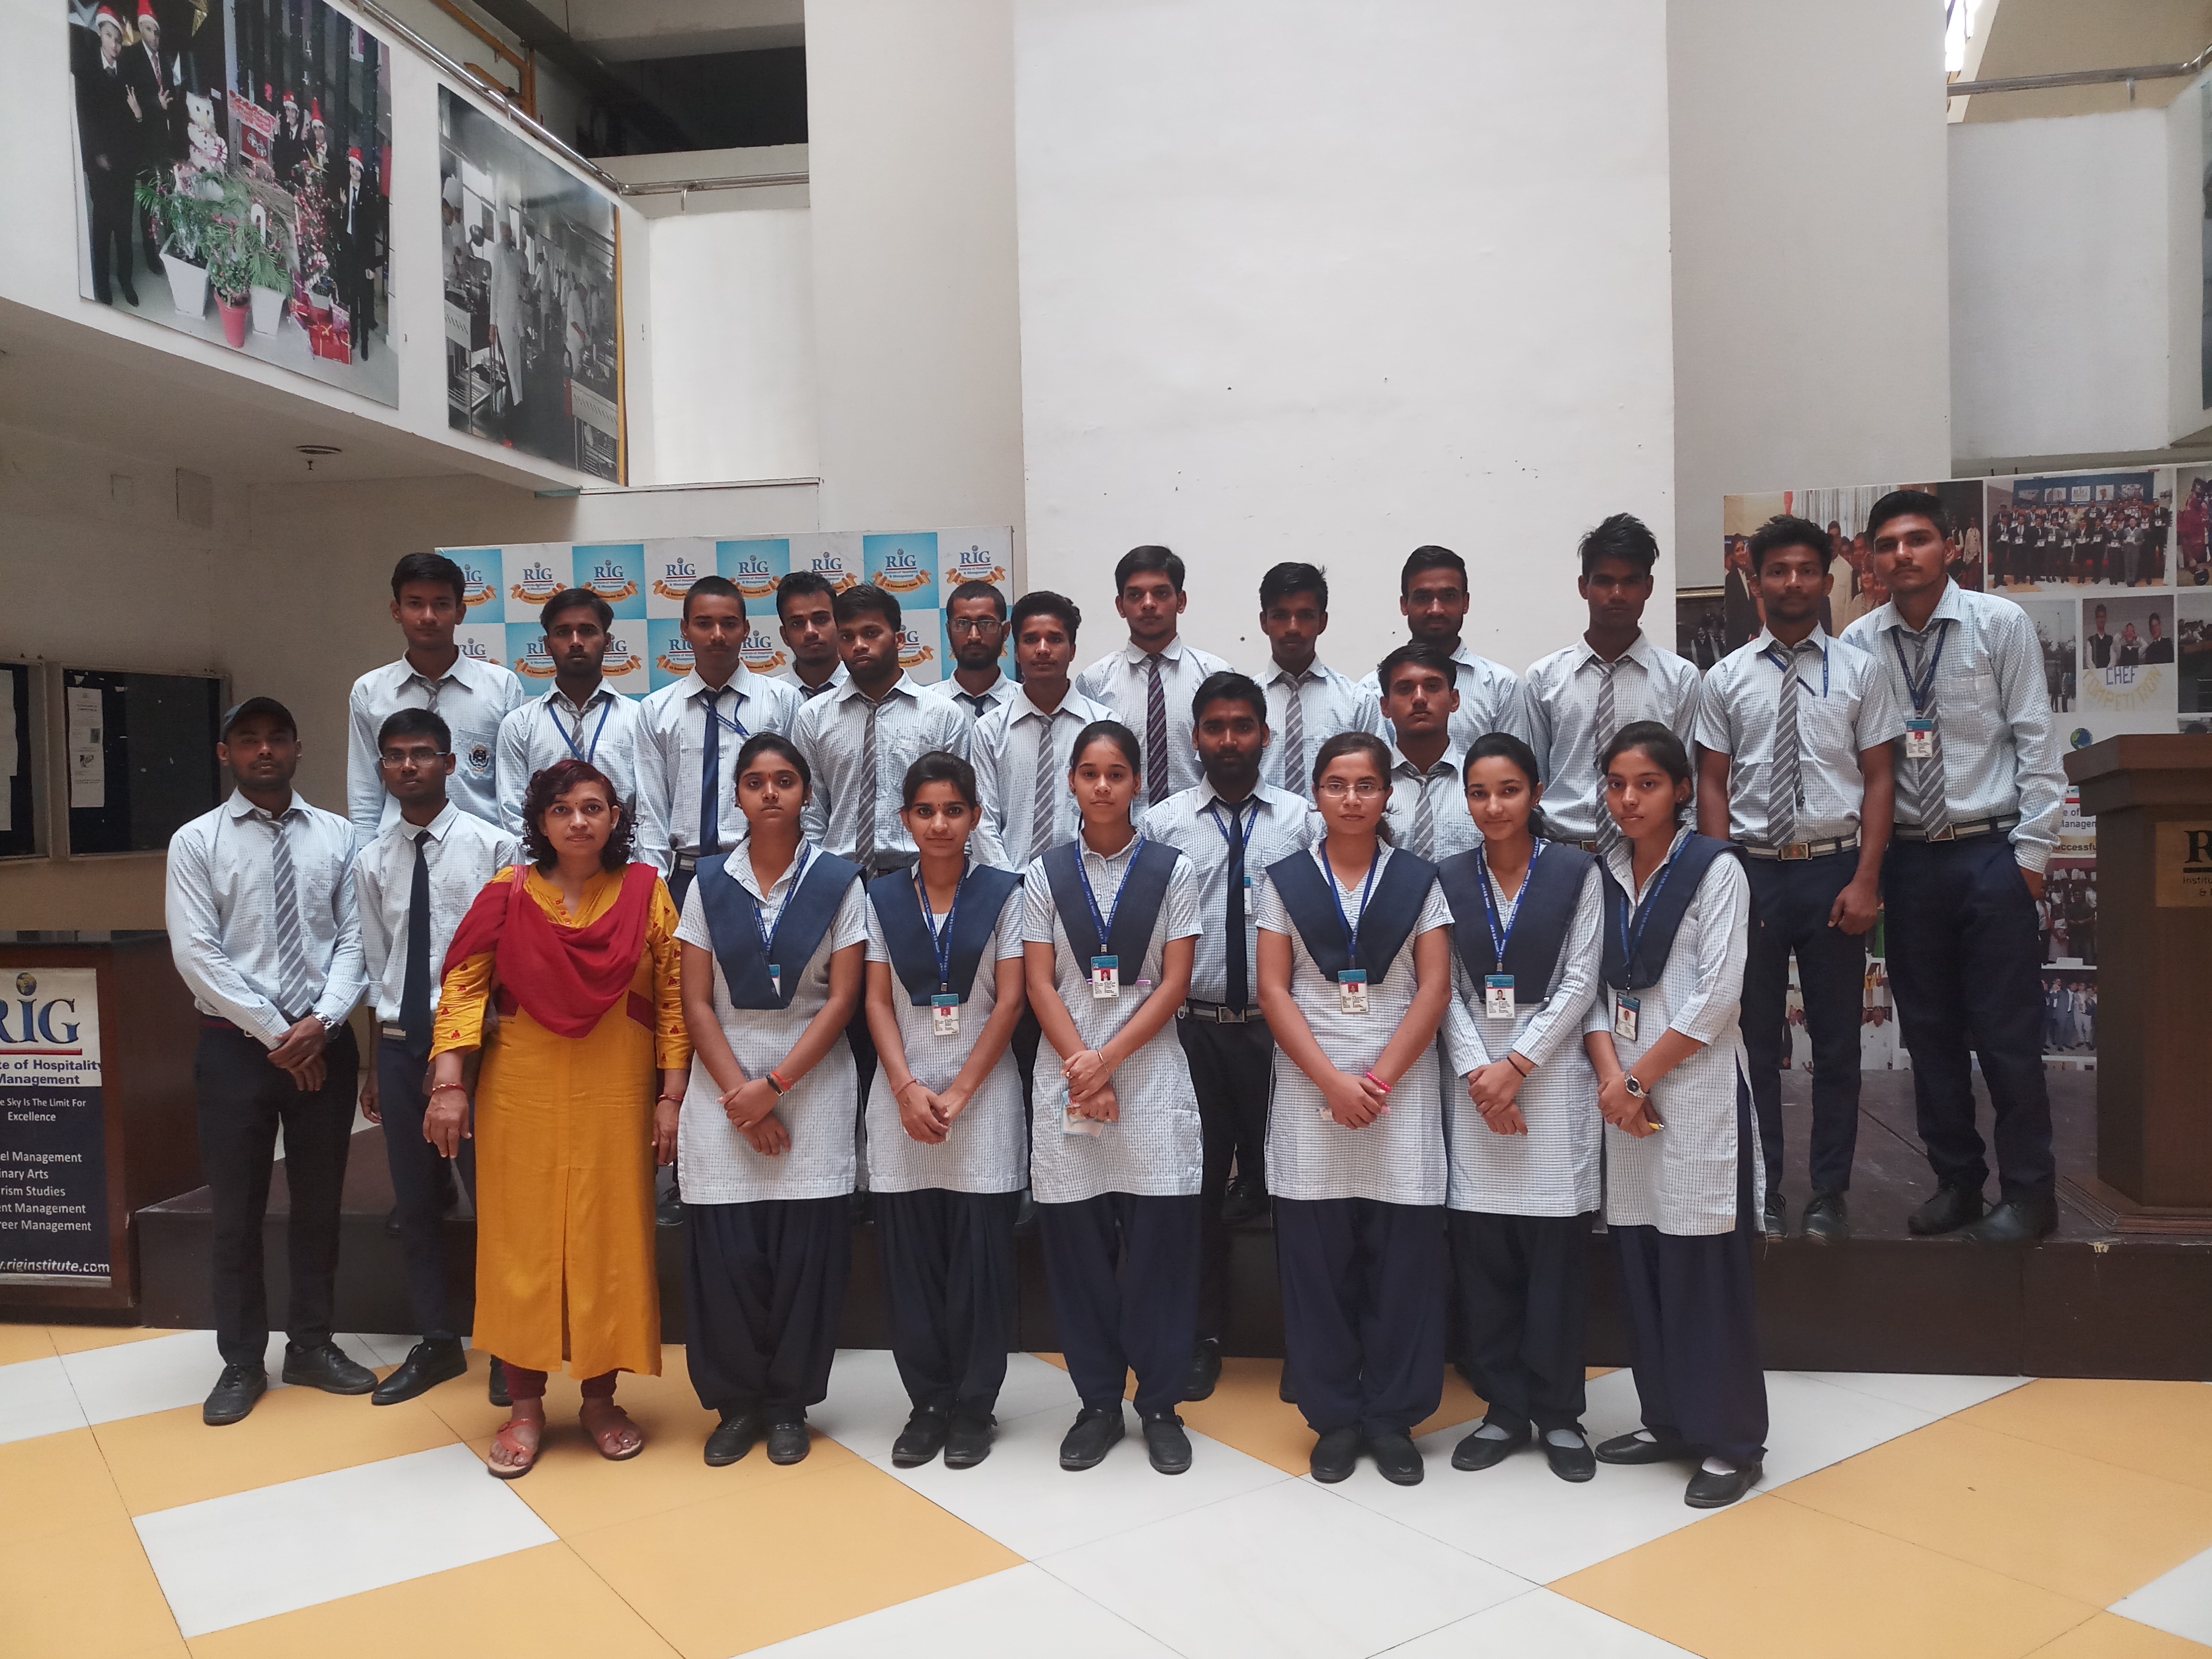 Visit of Jawahar Navodaya Vidyalay students and teachers at RIG